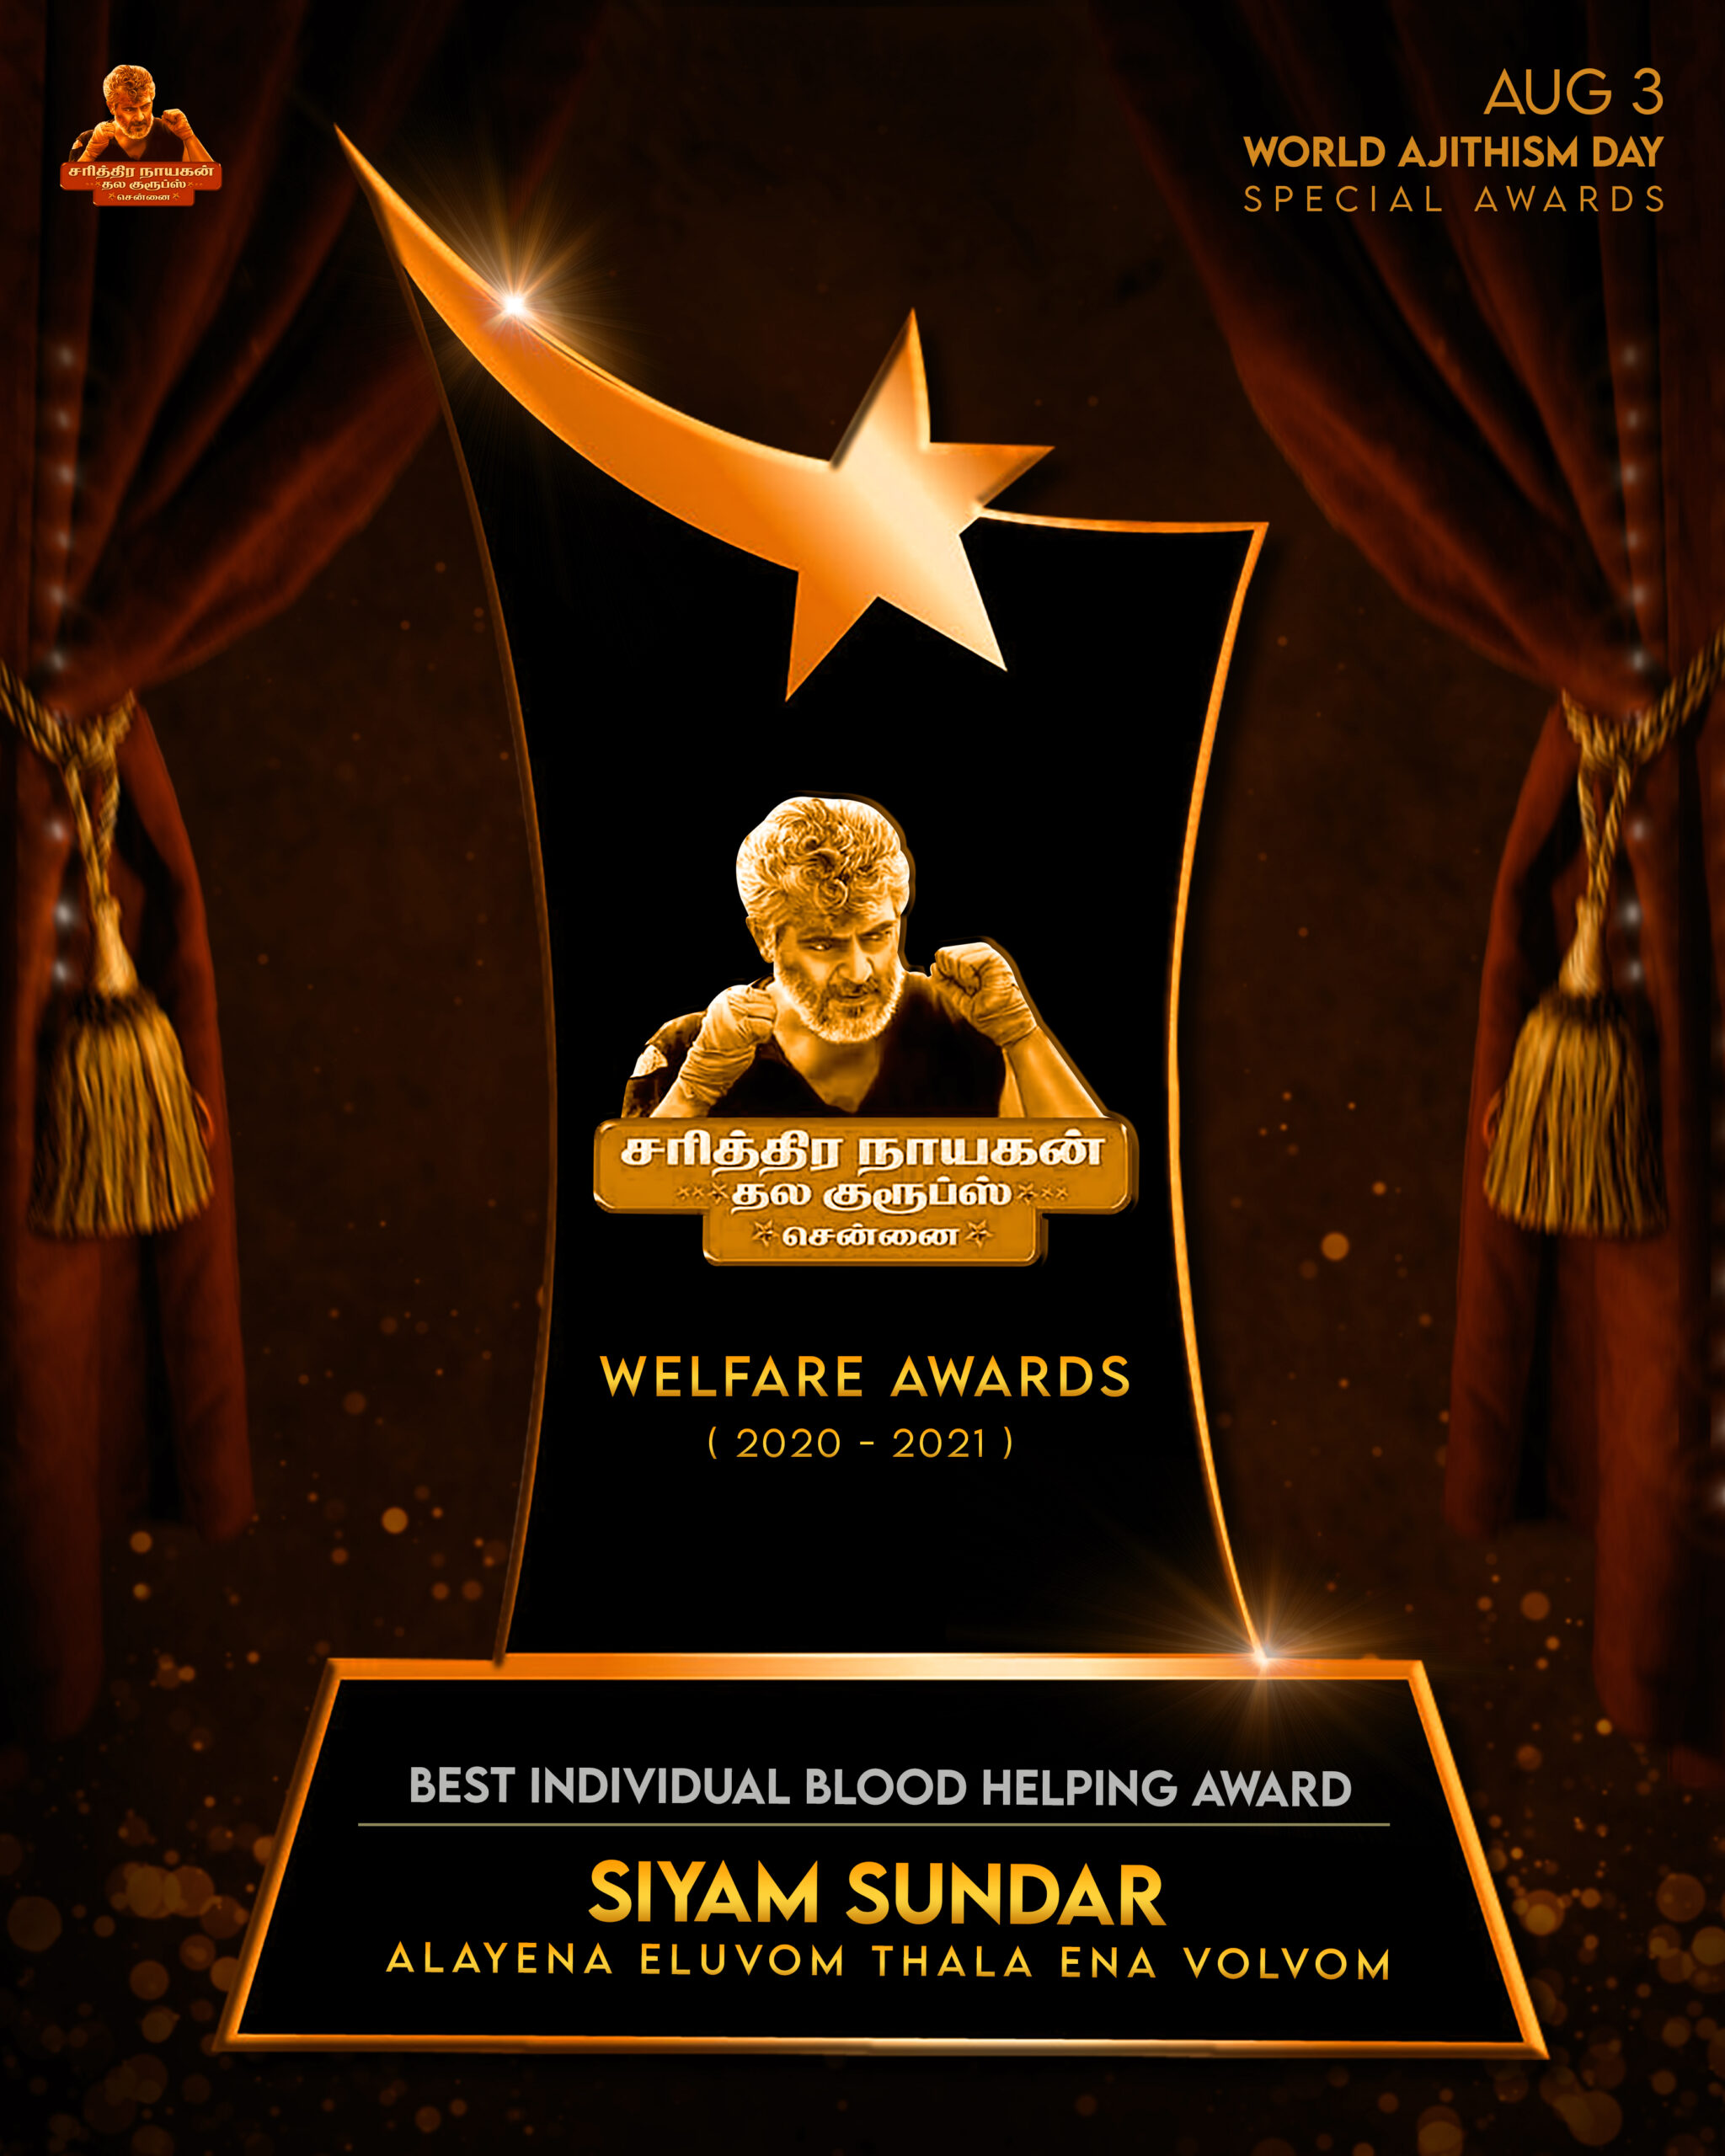 Welfare awards for Alaiyena Eluvom Thalayena Valvom